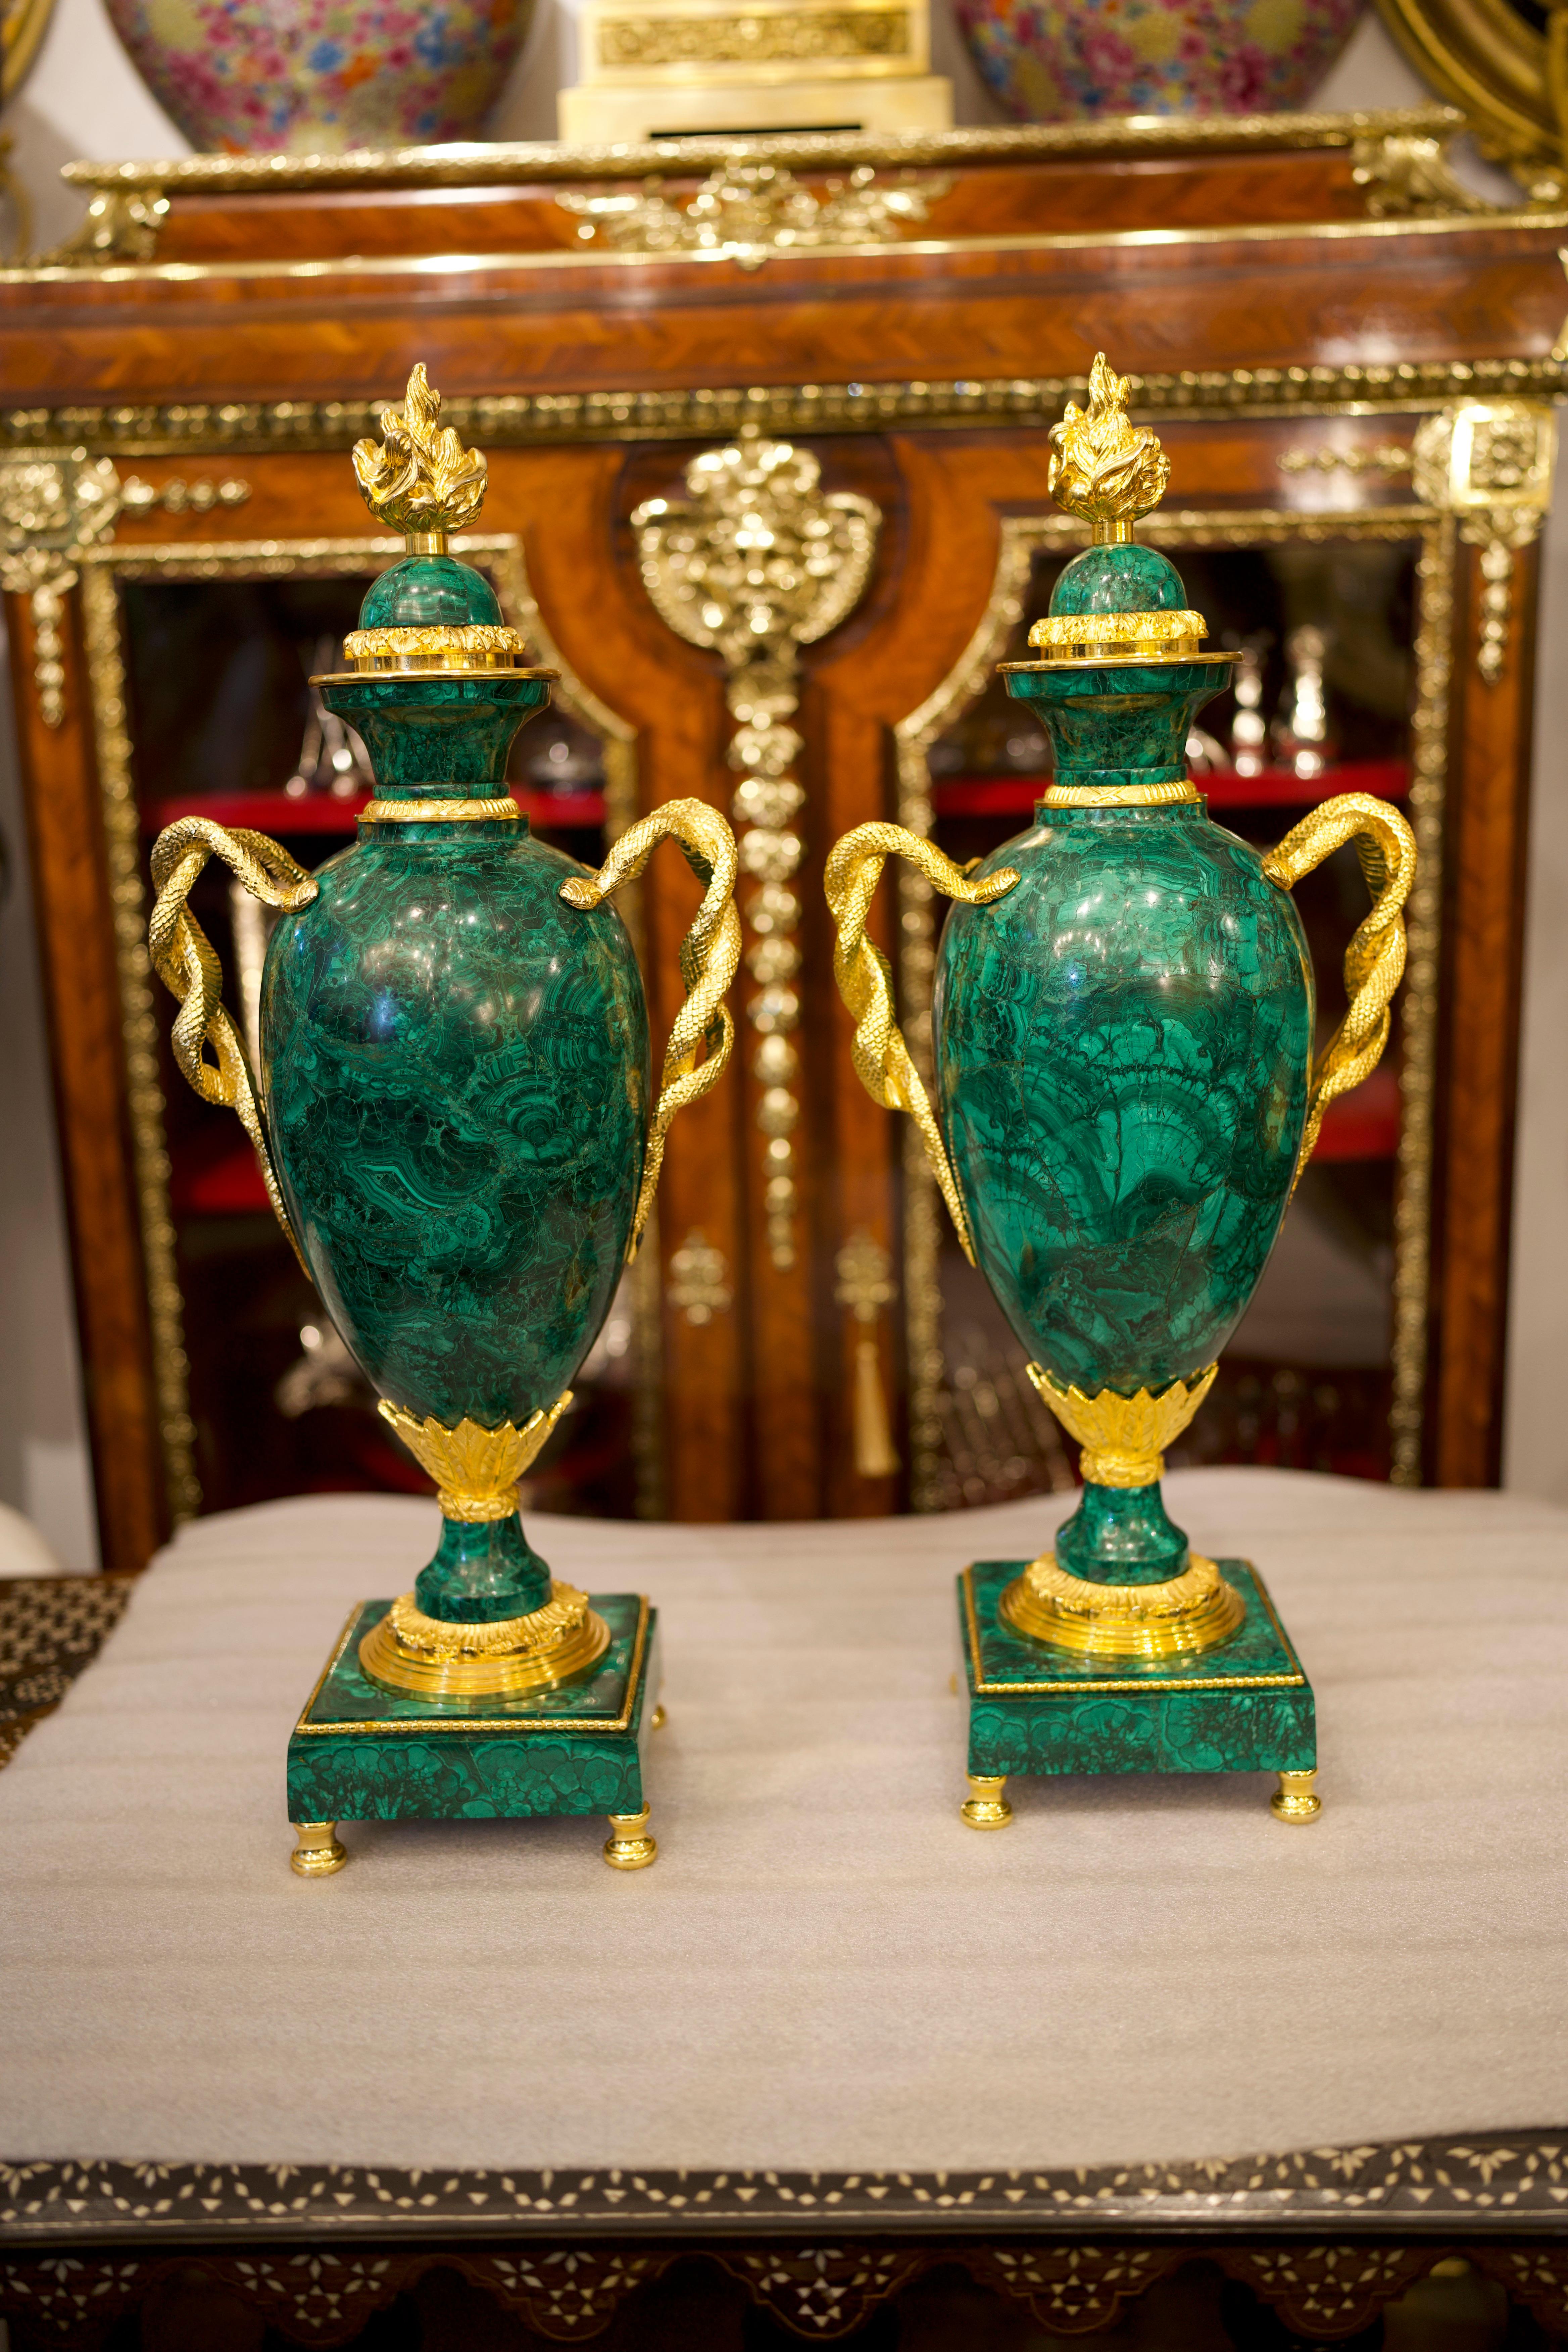 Une belle paire de grands vases de style Empire en malachite, montés en bronze doré.

Exécutés dans un mélange de styles mais dominés par une influence Empire, ces étonnants vases montés en malachite et en bronze doré ont été fabriqués au début du